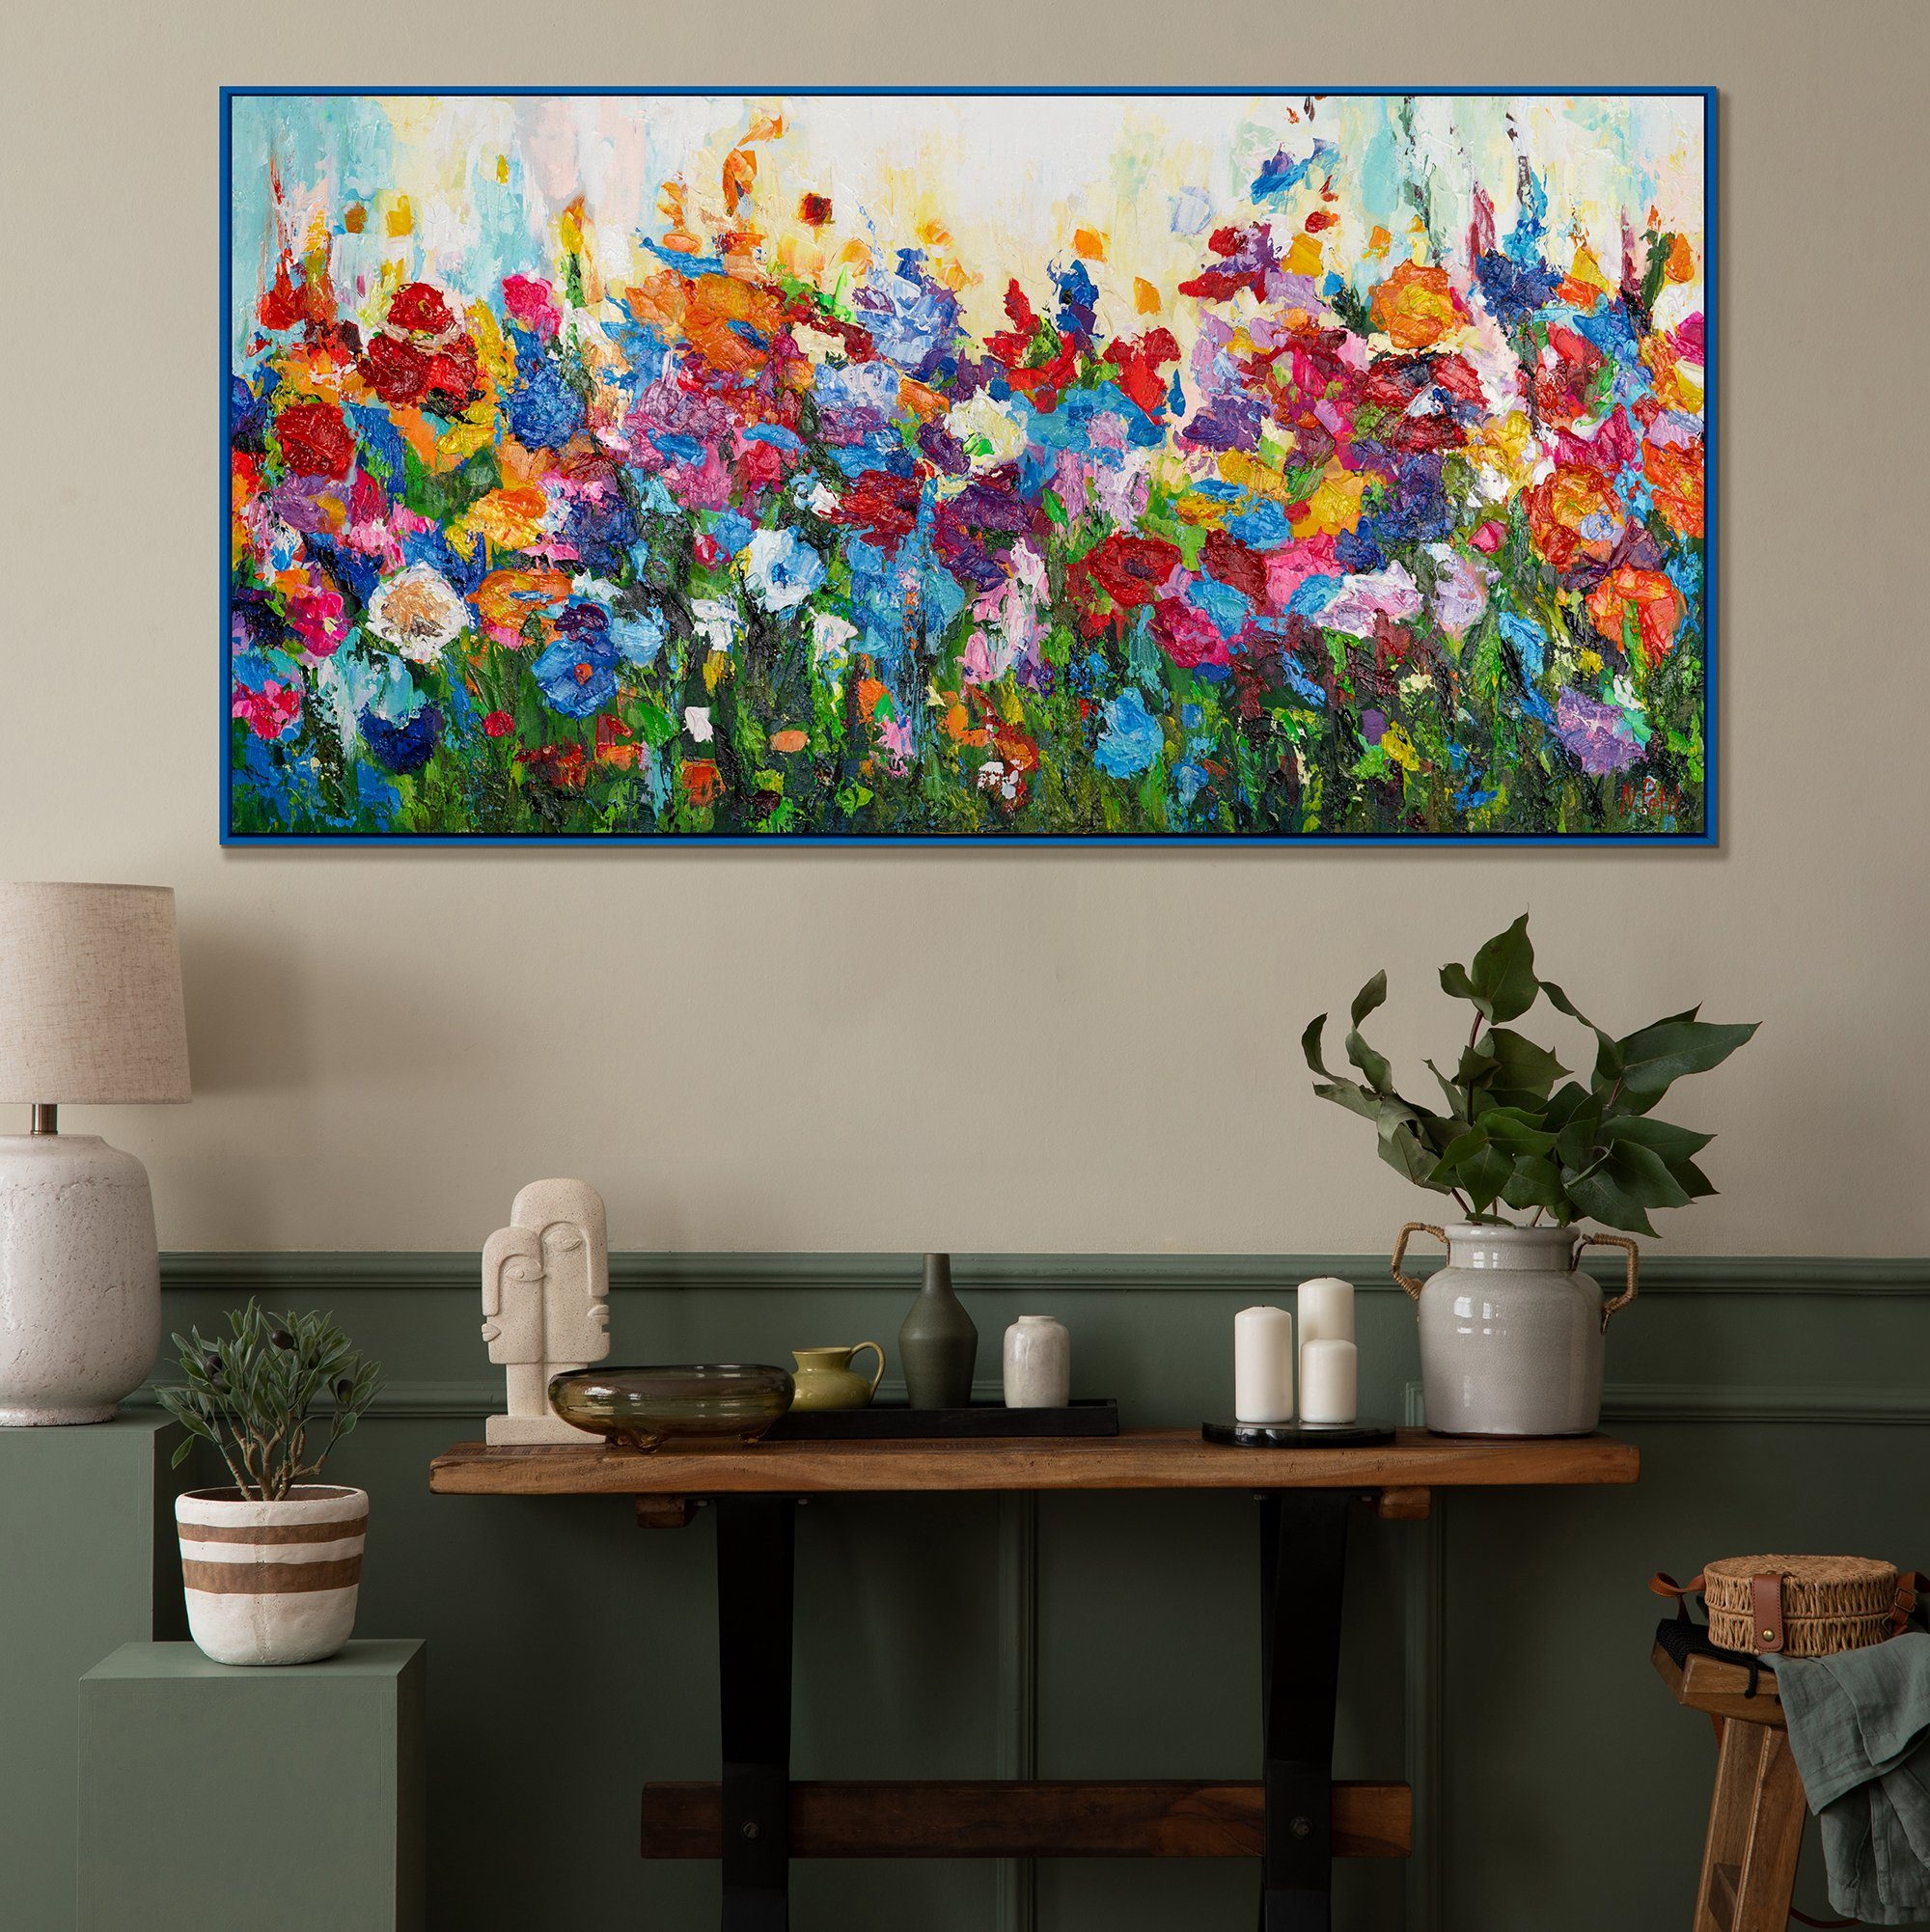 Mit in Gemälde Blau Farben, Rahmen Blumige Blumen YS-Art